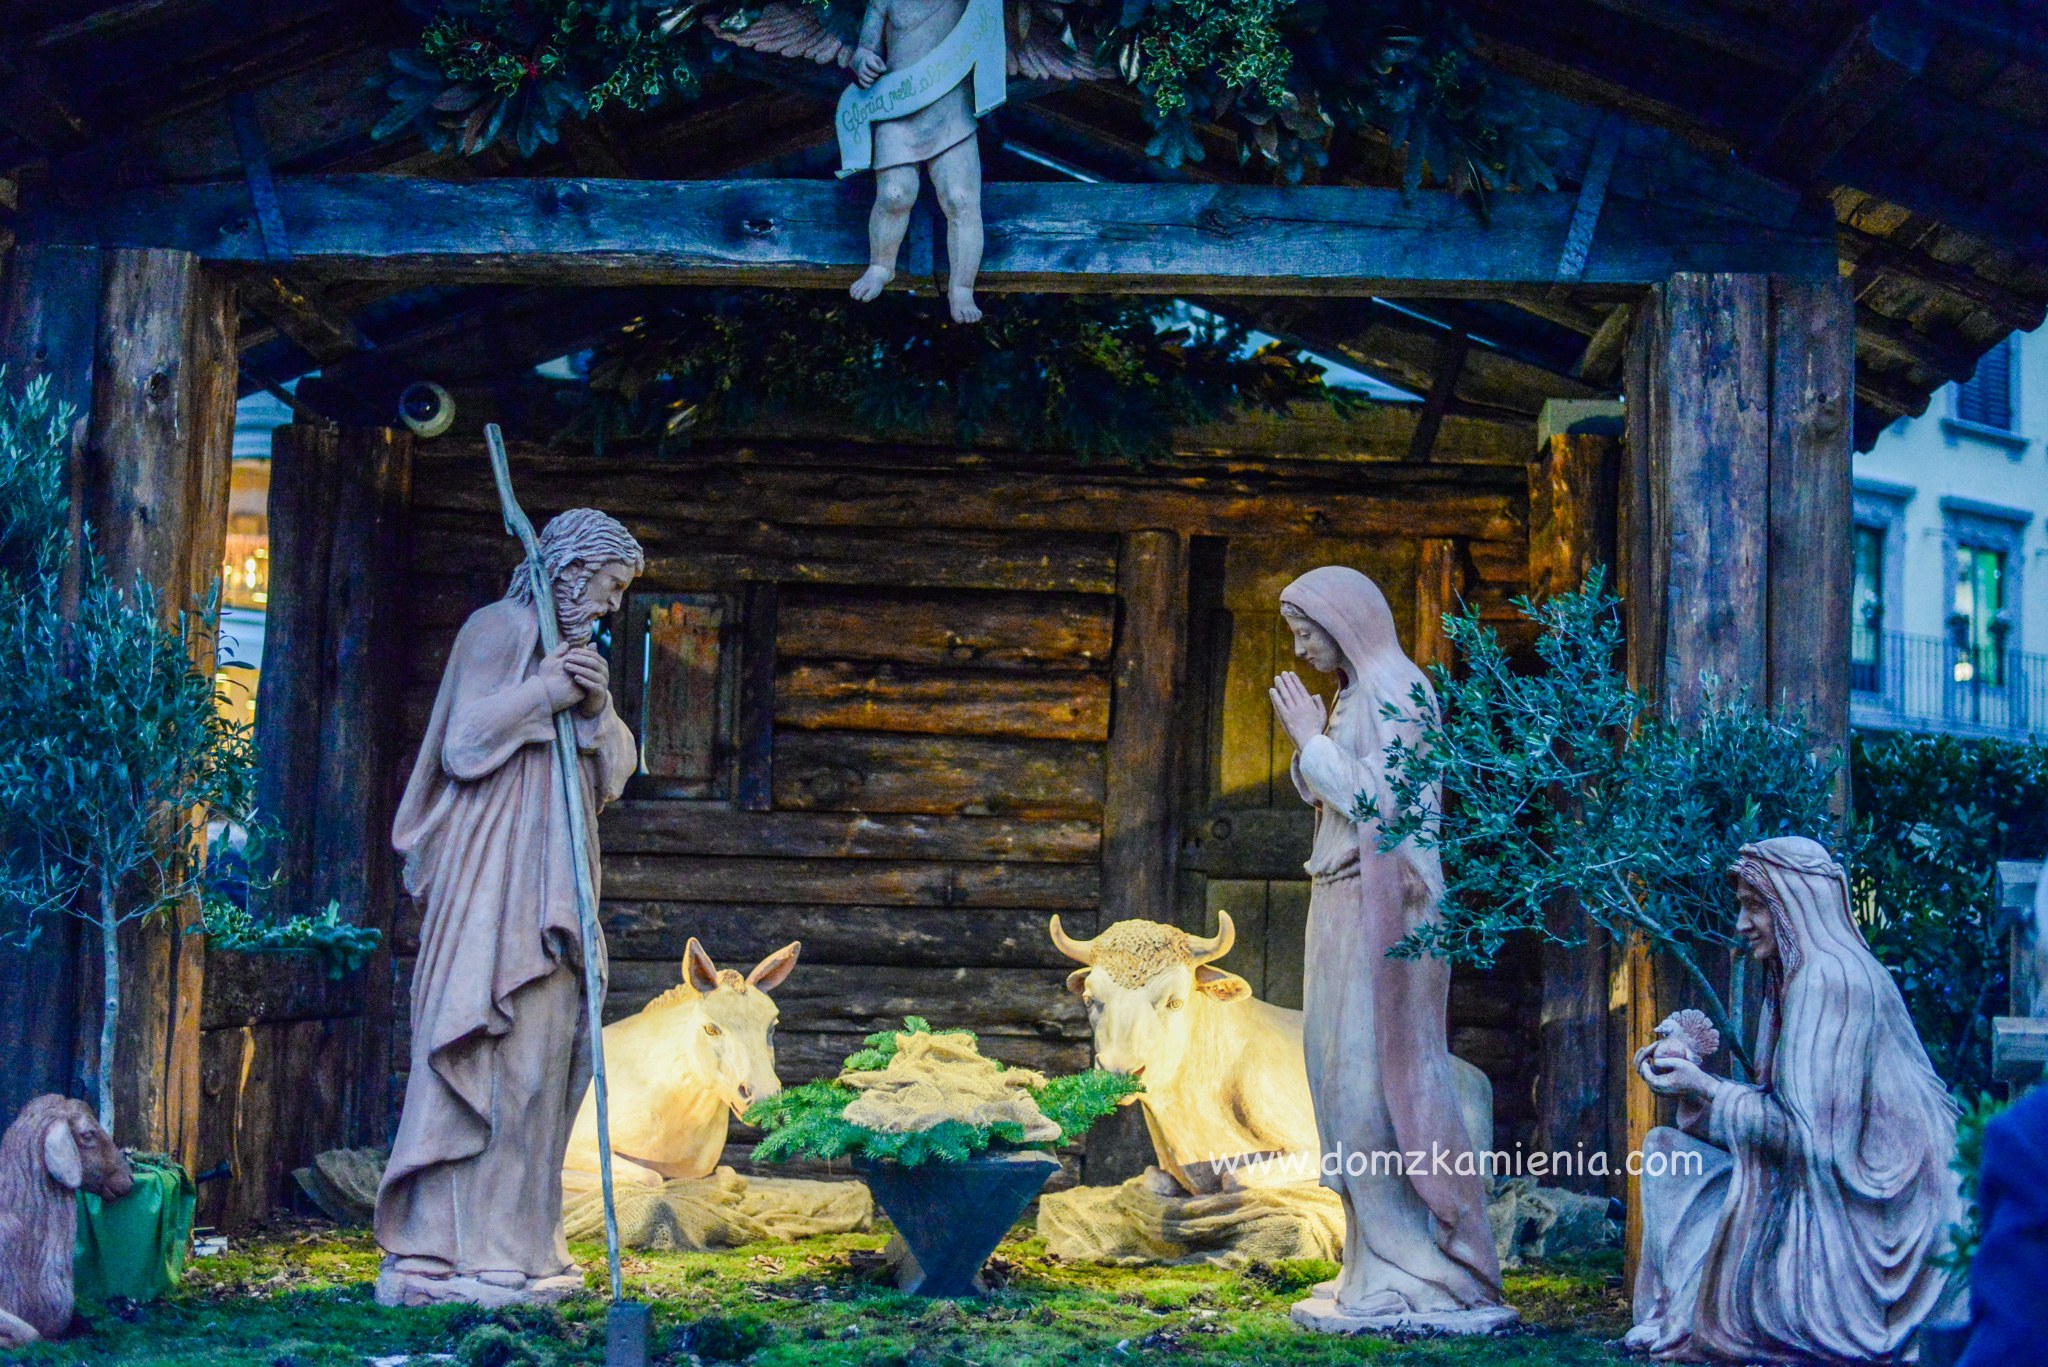 Boże Narodzenie we Florencji - Dom z Kamienia blog